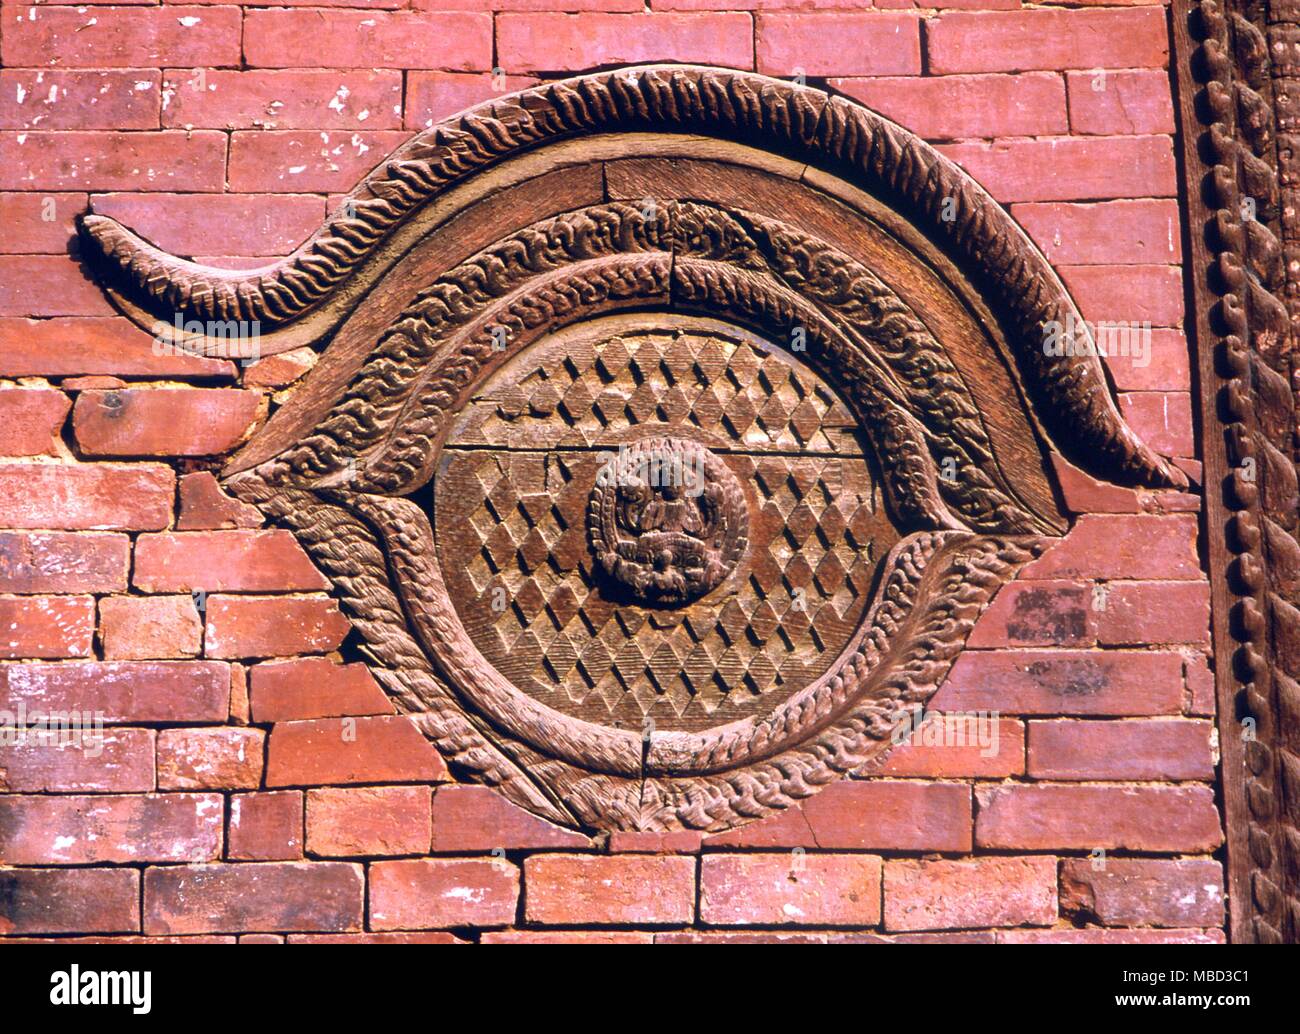 Symbole - Auge. Kosmische Auge im Mauerwerk auf einen Tempel in Patan, Nepal errichtet. Stockfoto